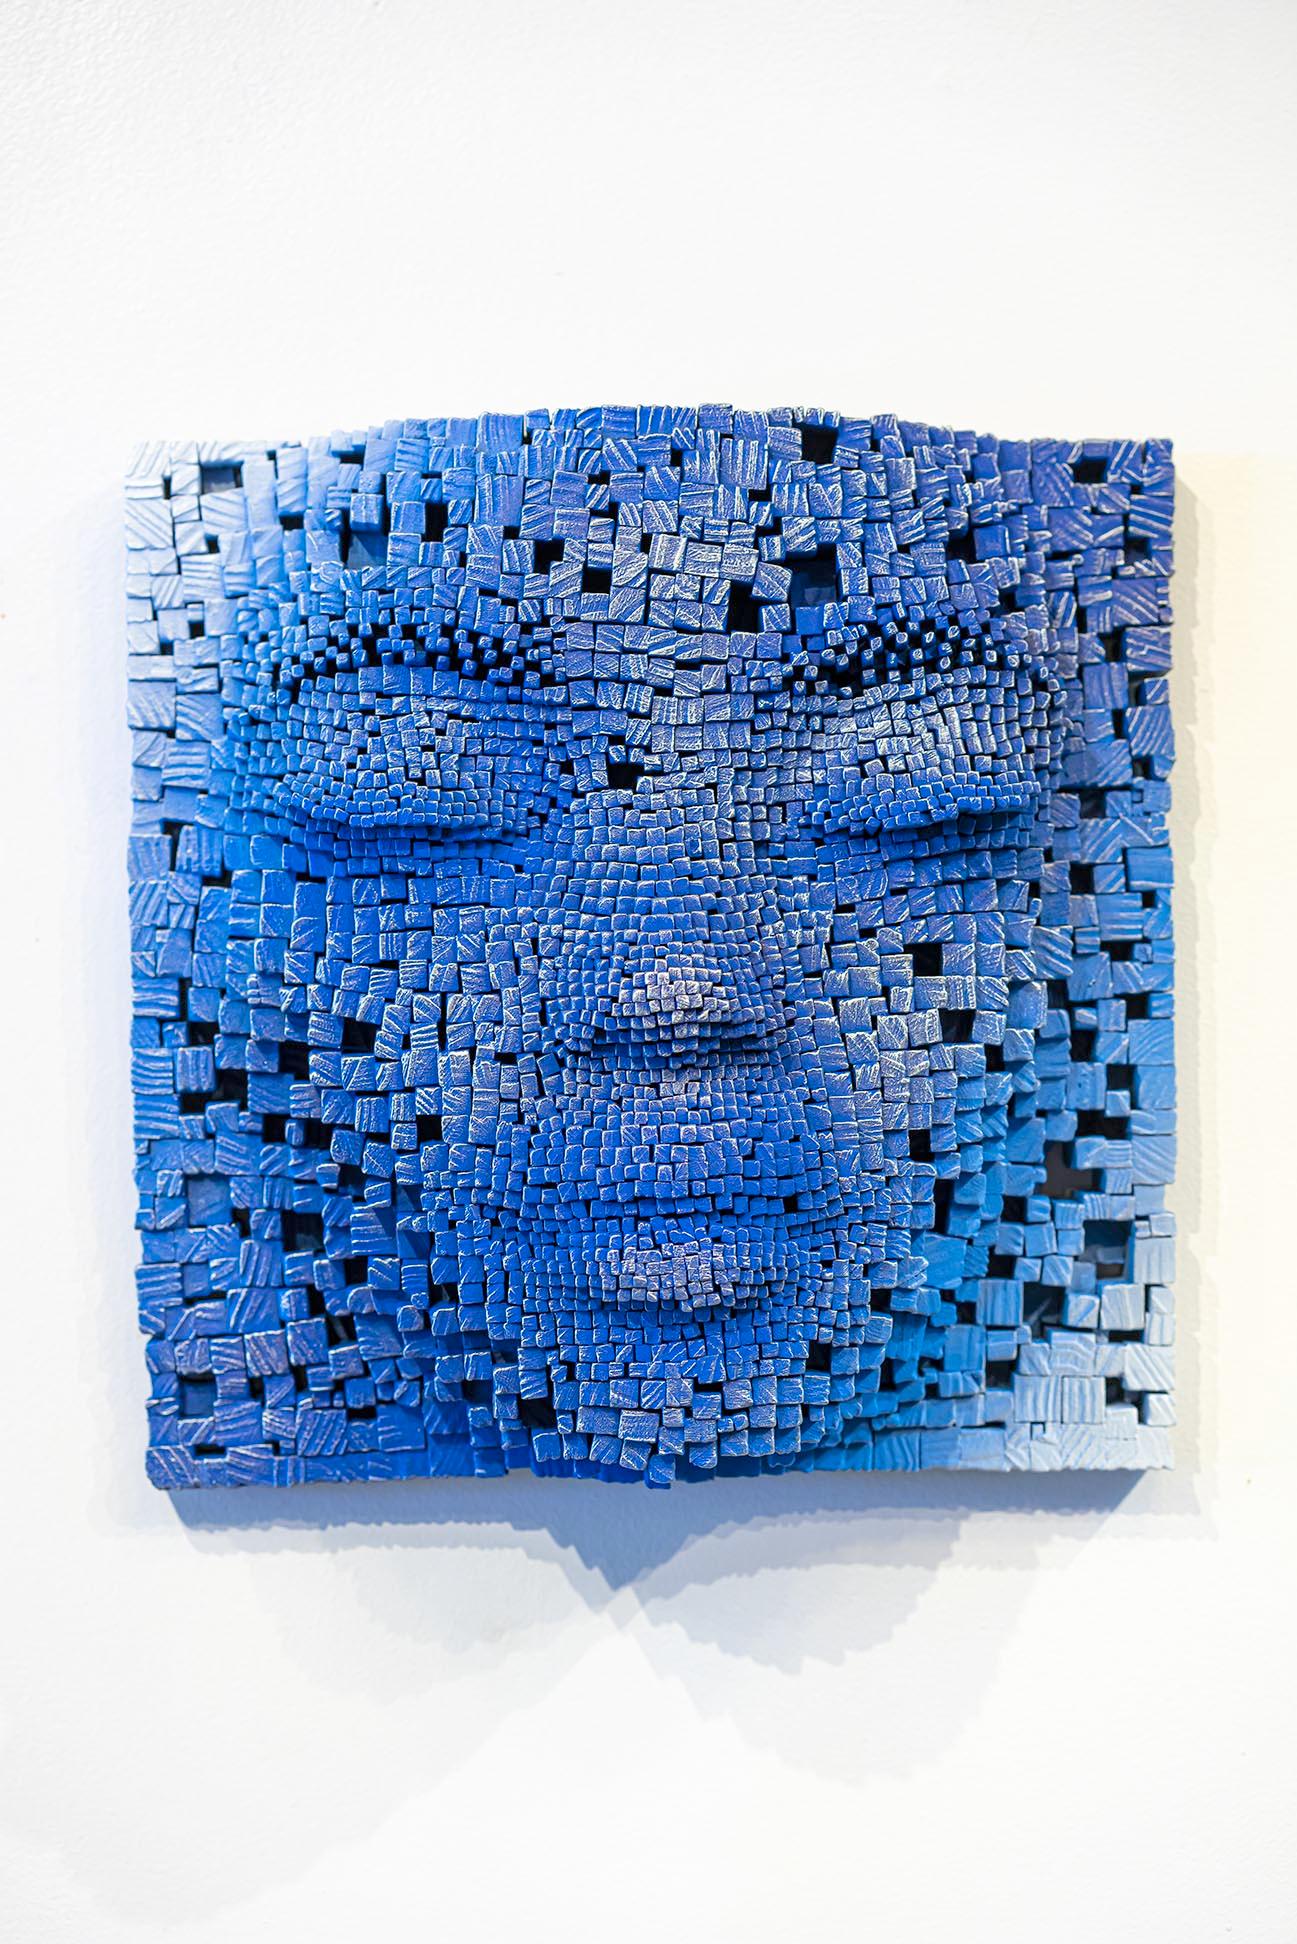 Gil Bruvel Figurative Sculpture - Mask #5